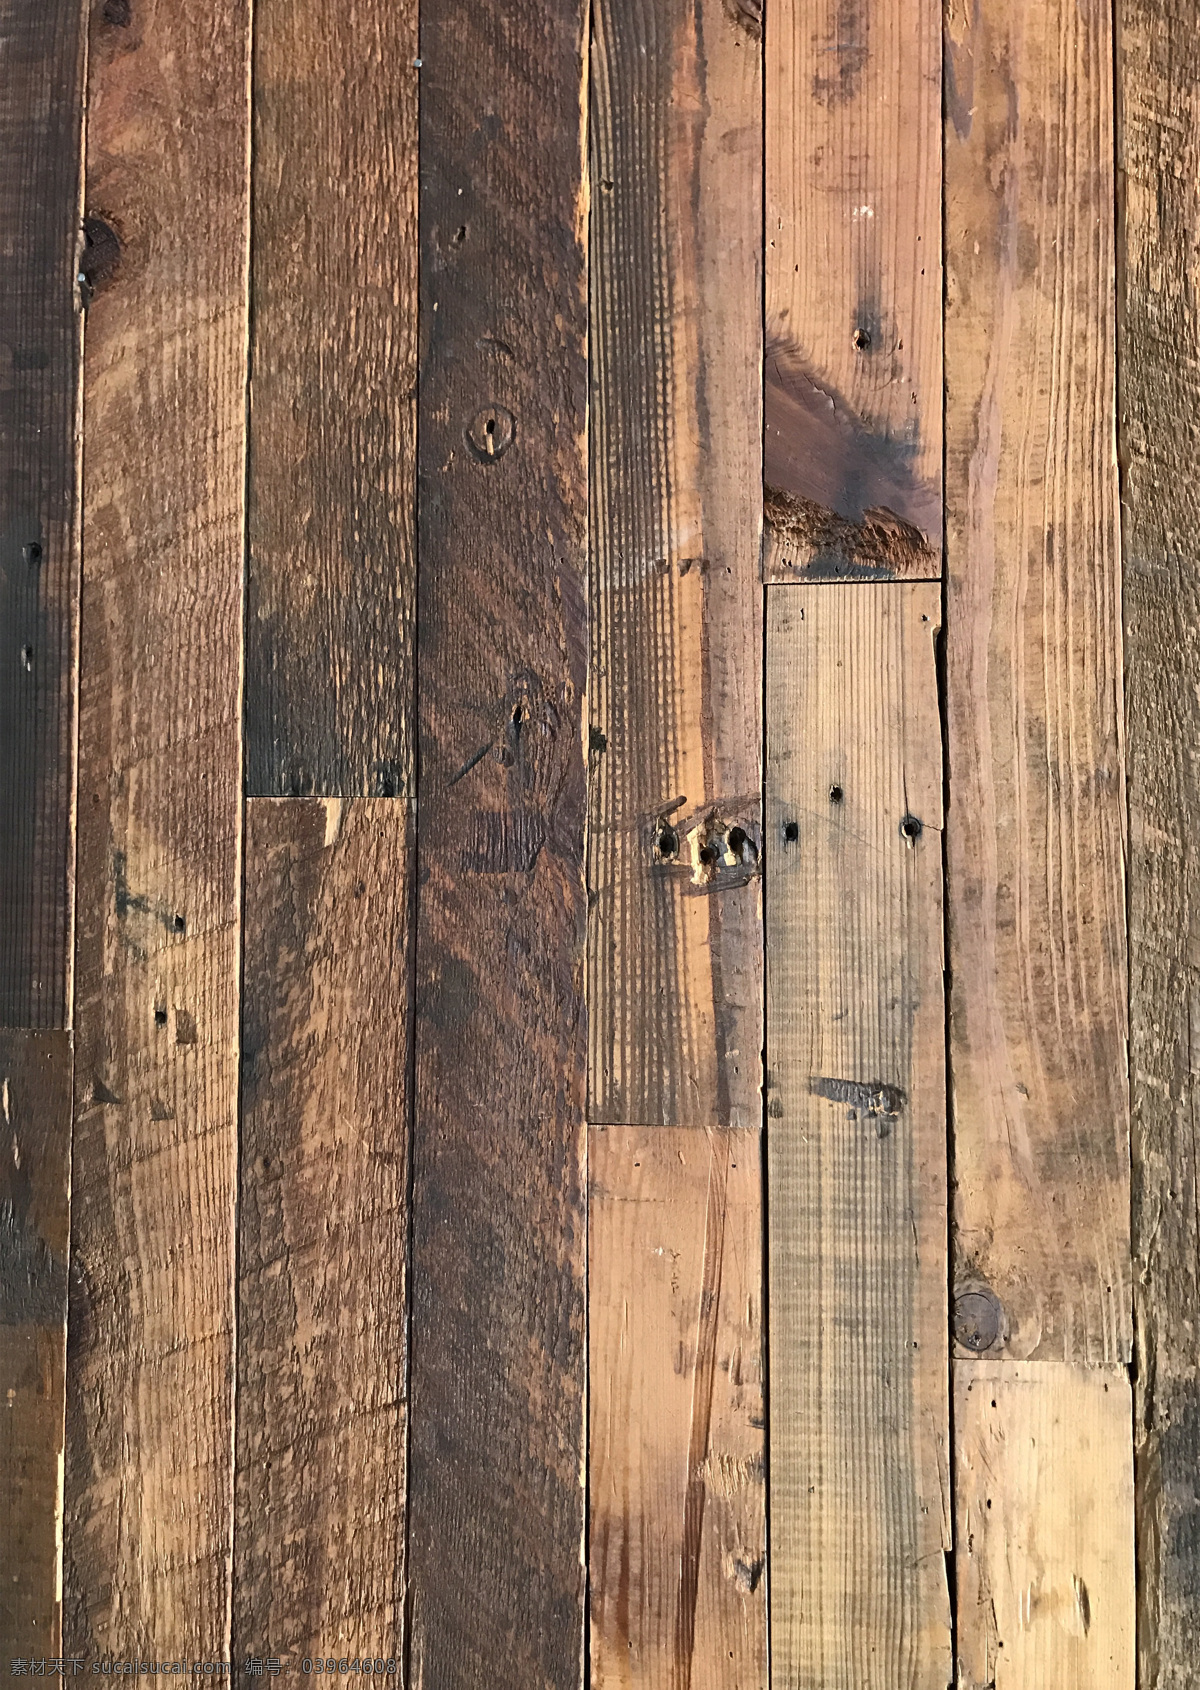 木墙 地板 木板墙 木纹 木板素材 木板背景 木板墙素材 木墙素材 木墙背景 墙面素材 木制墙面